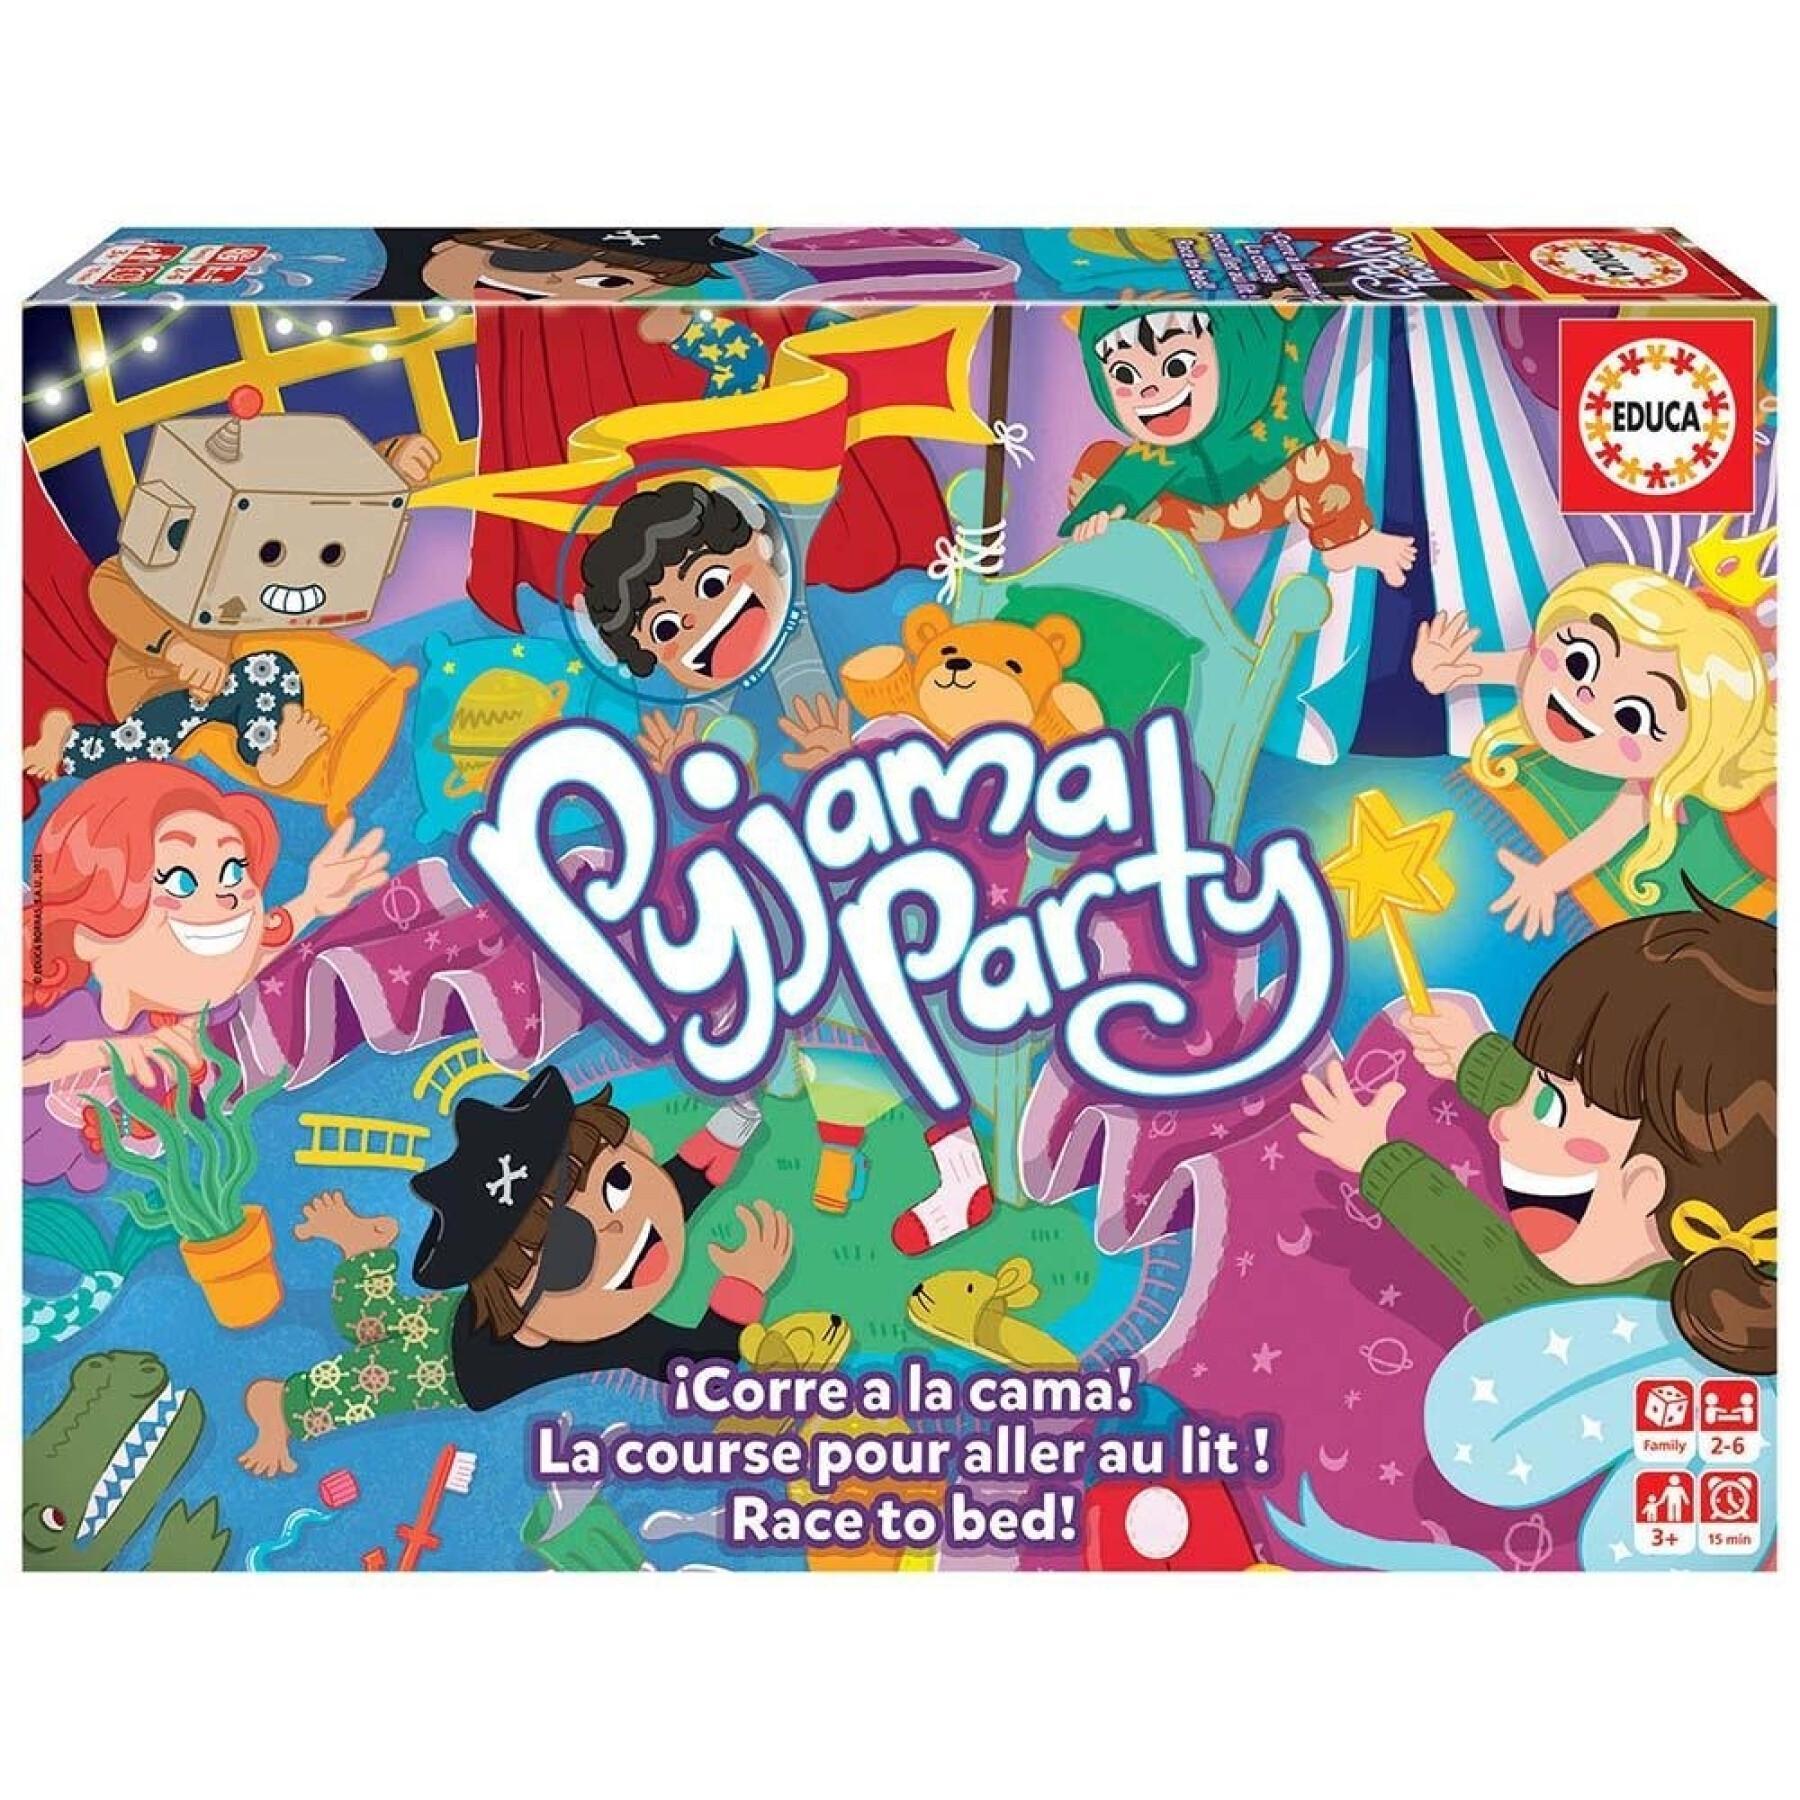 Juegos de cartas Educa Pijama Party